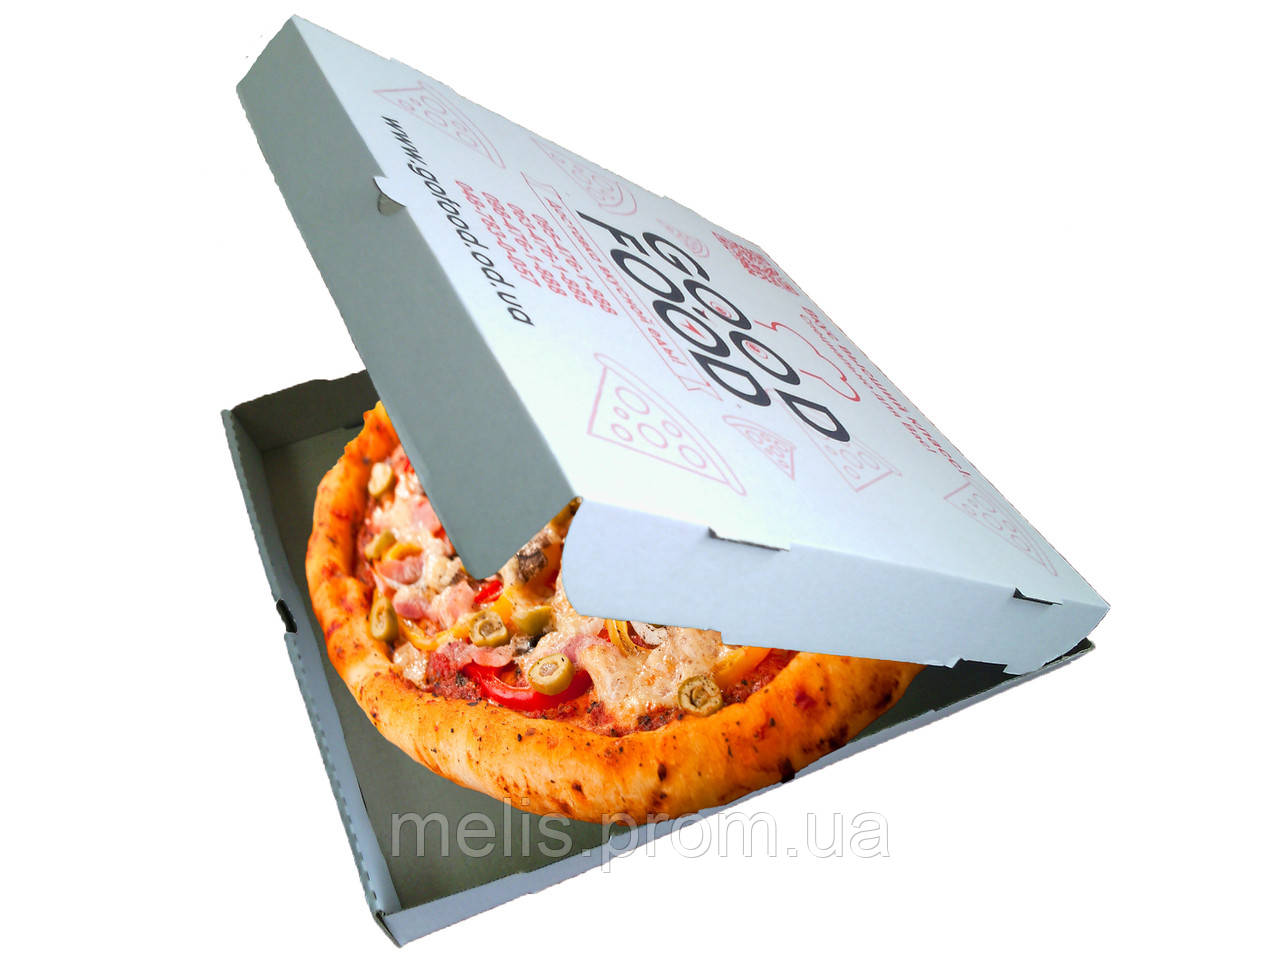 фото упаковки пиццы в фото 94